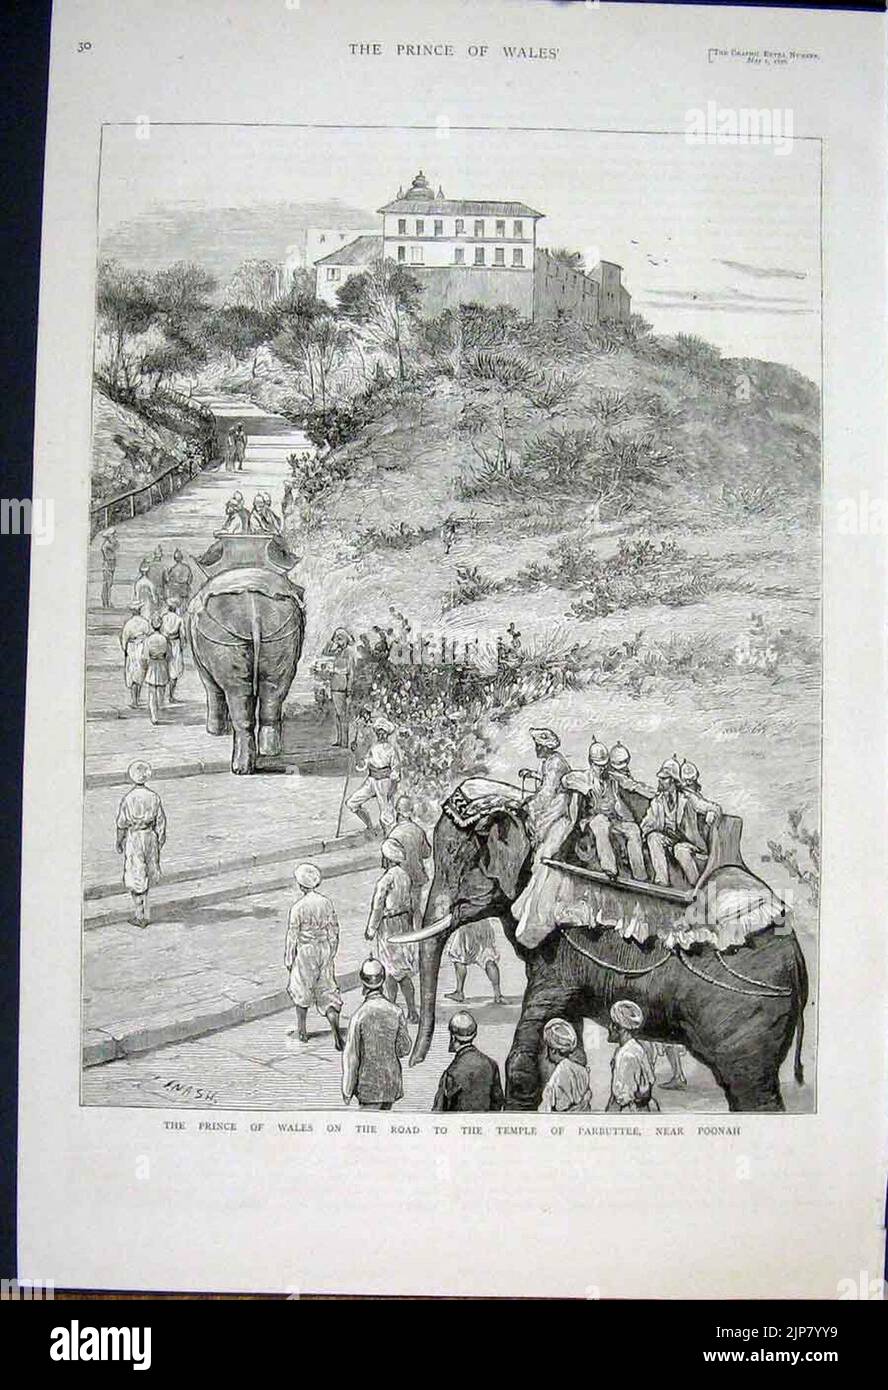 La visita reale in India, il Principe di Galles sulla strada per il Tempio di Parbuttee, vicino Poonah - il grafico 1875 Foto Stock